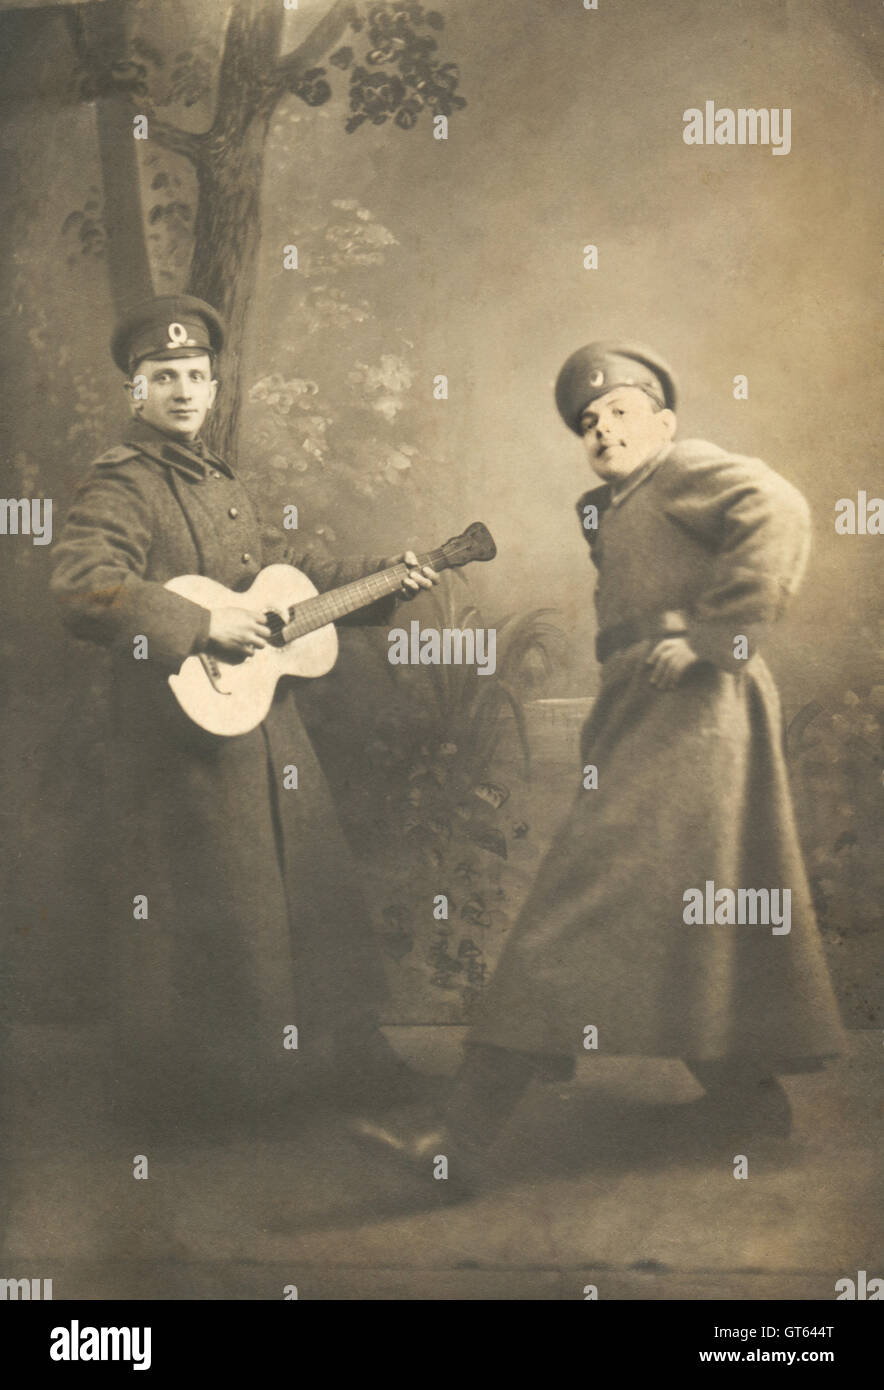 Vintage genere ritratto di due soldati all inizio del ventesimo secolo, la Russia. Due giovani in uniforme militare sono la riproduzione di una scena. Uno suona la chitarra, l'altra è dancing Foto Stock